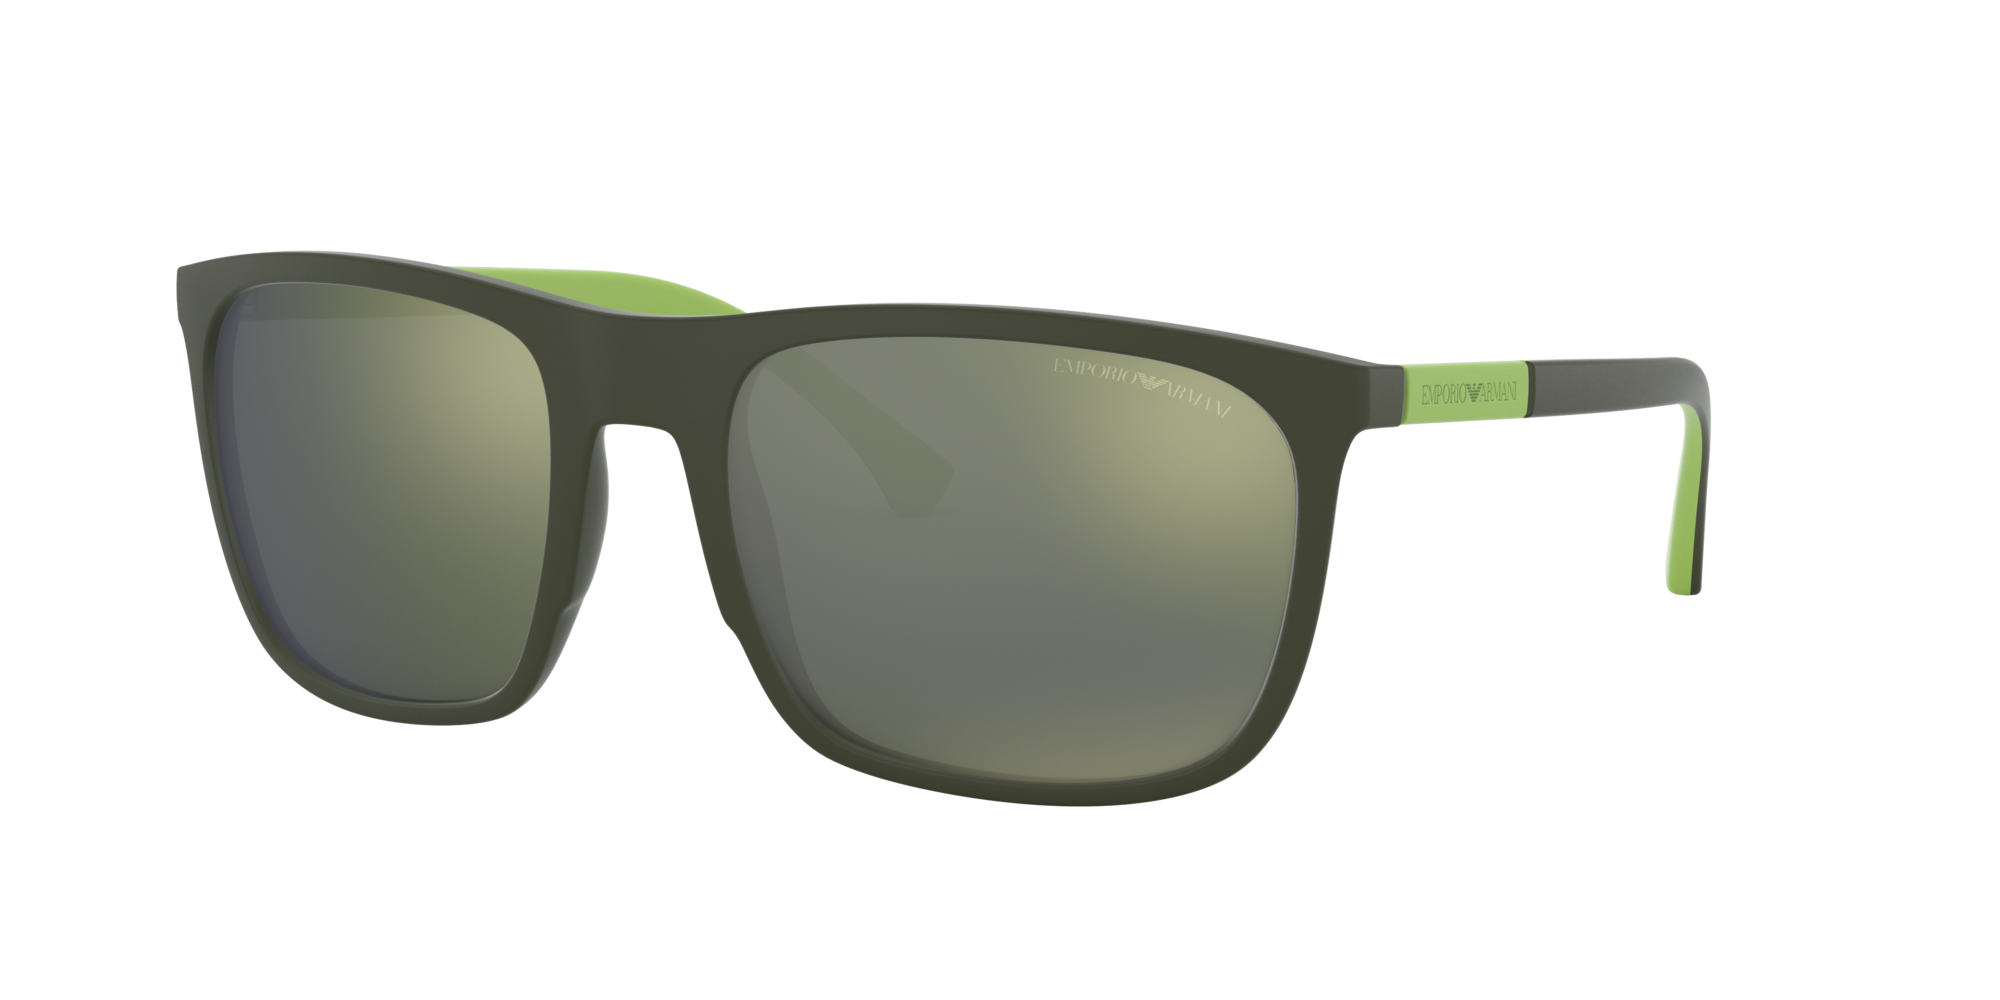 armani green sunglasses